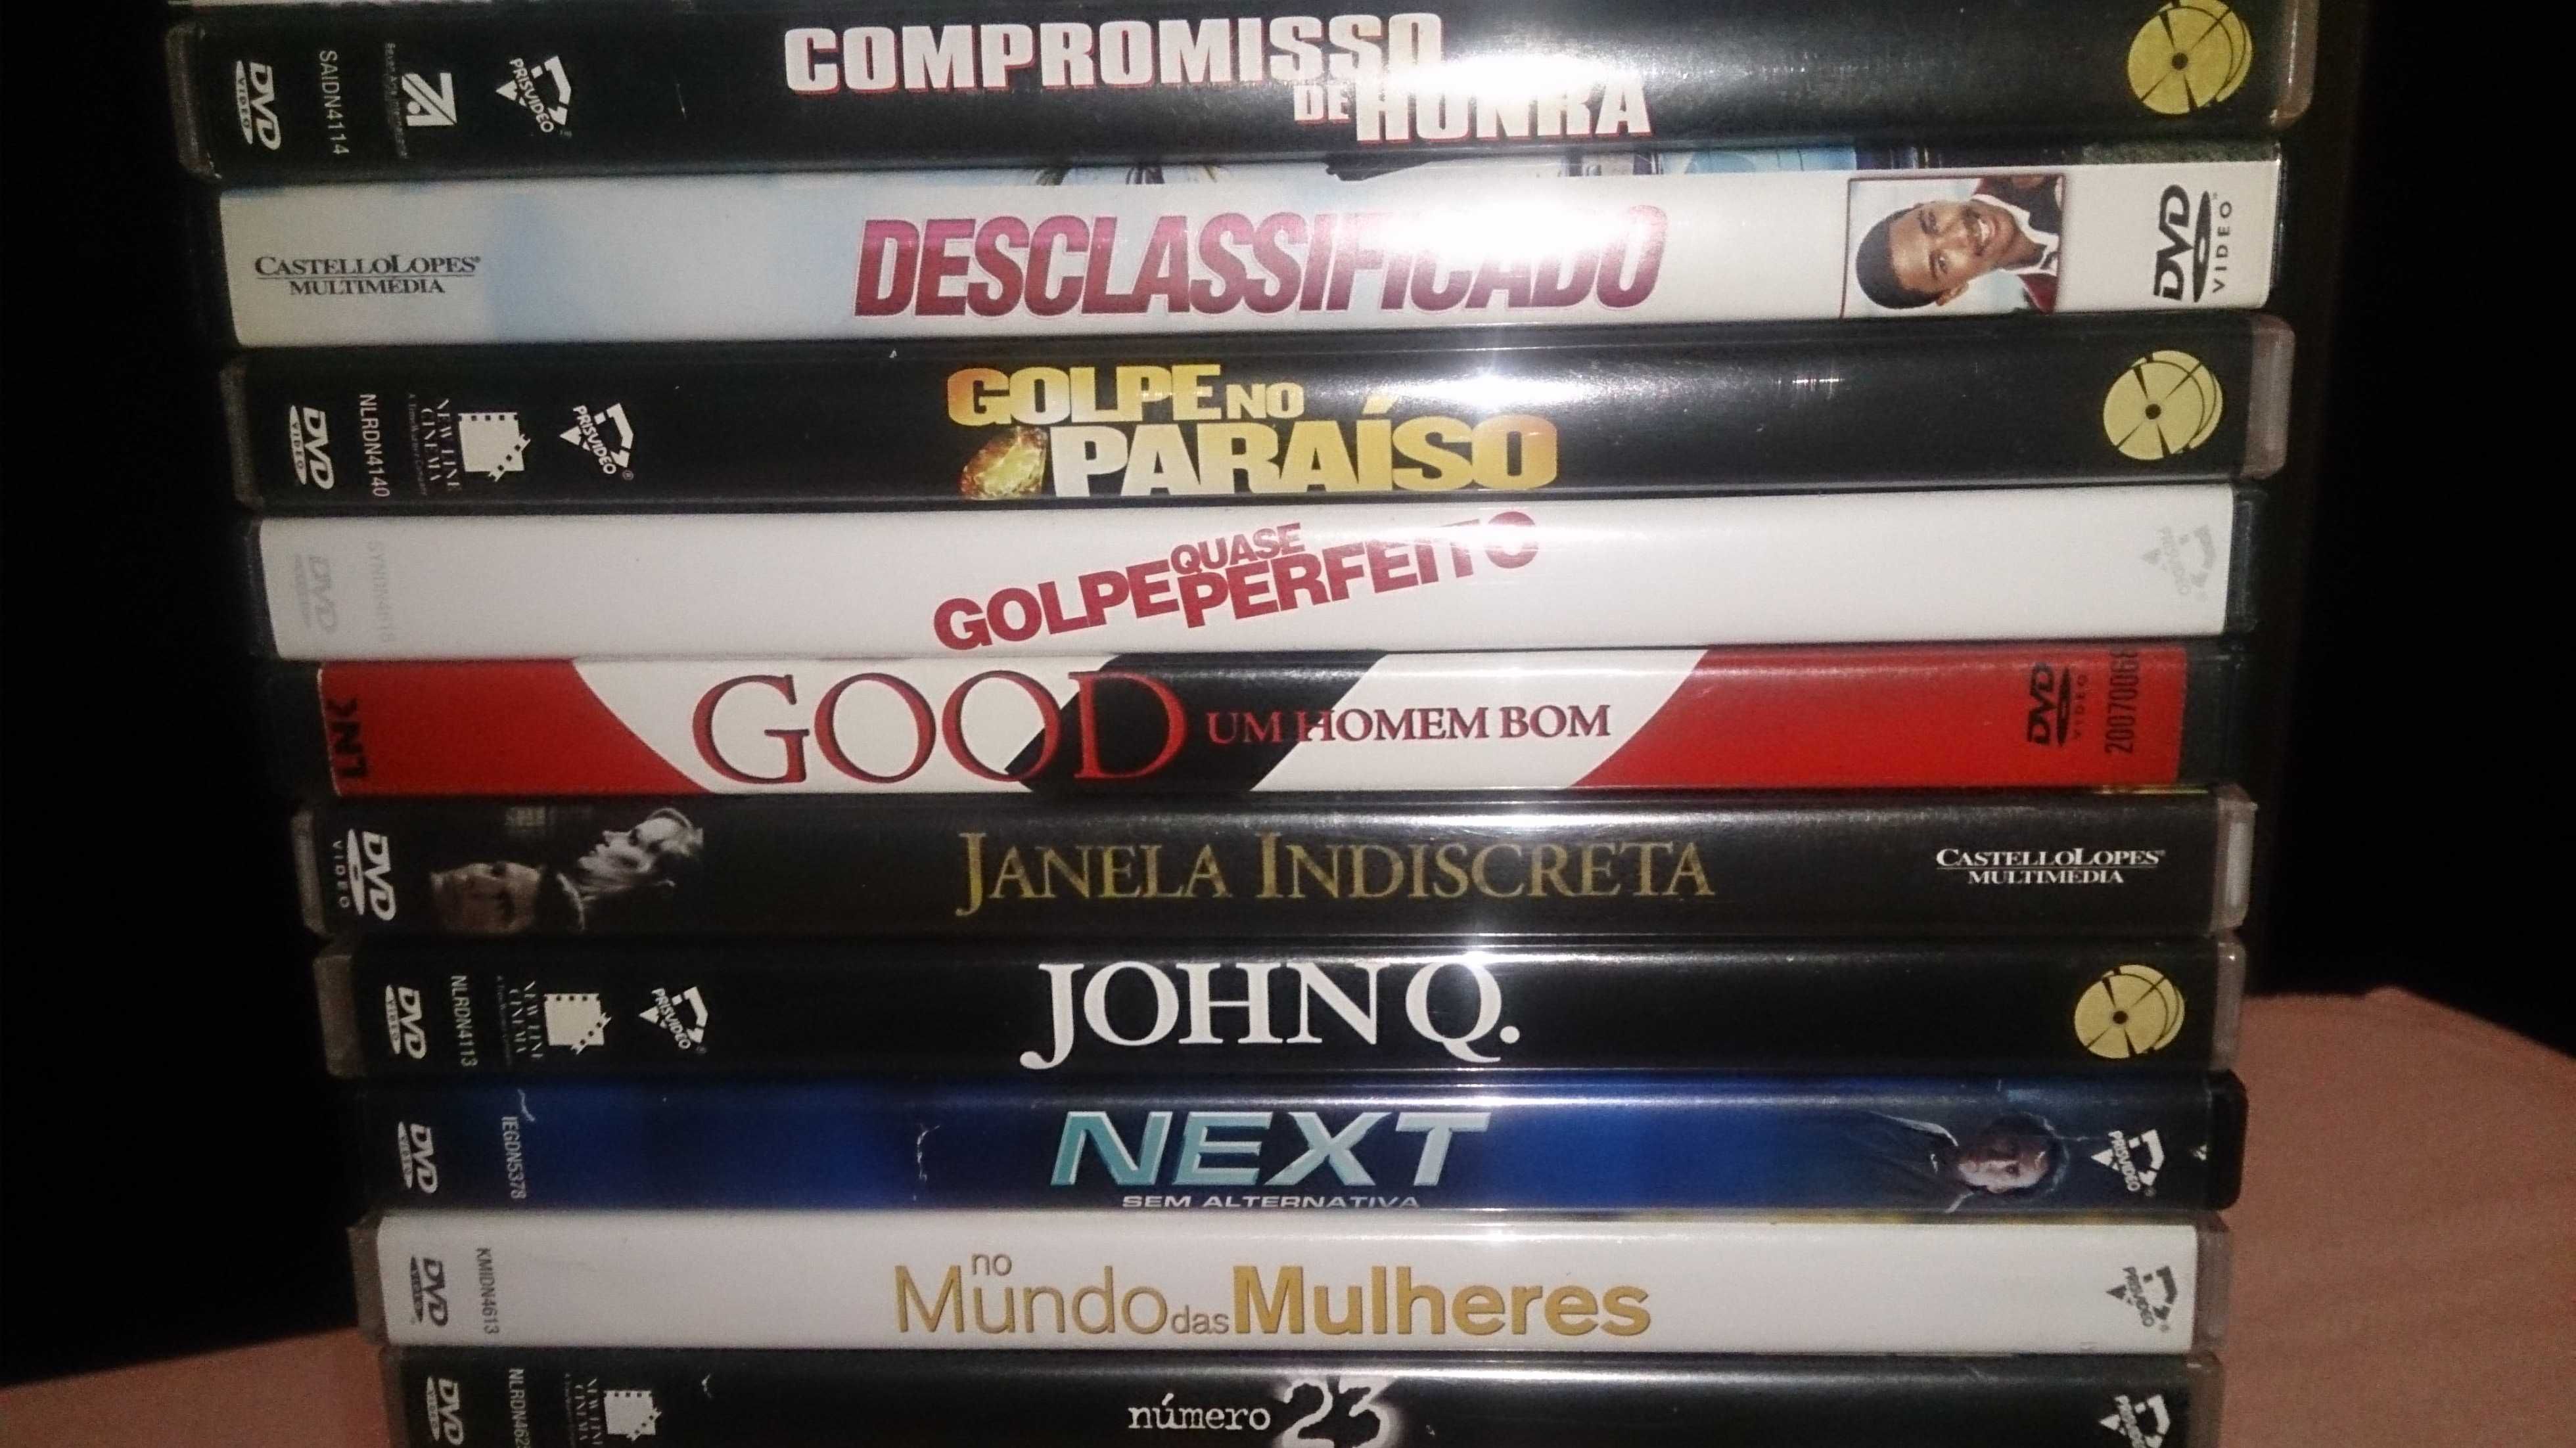 filmes dvds diversos (preço por unidade 1 euro)